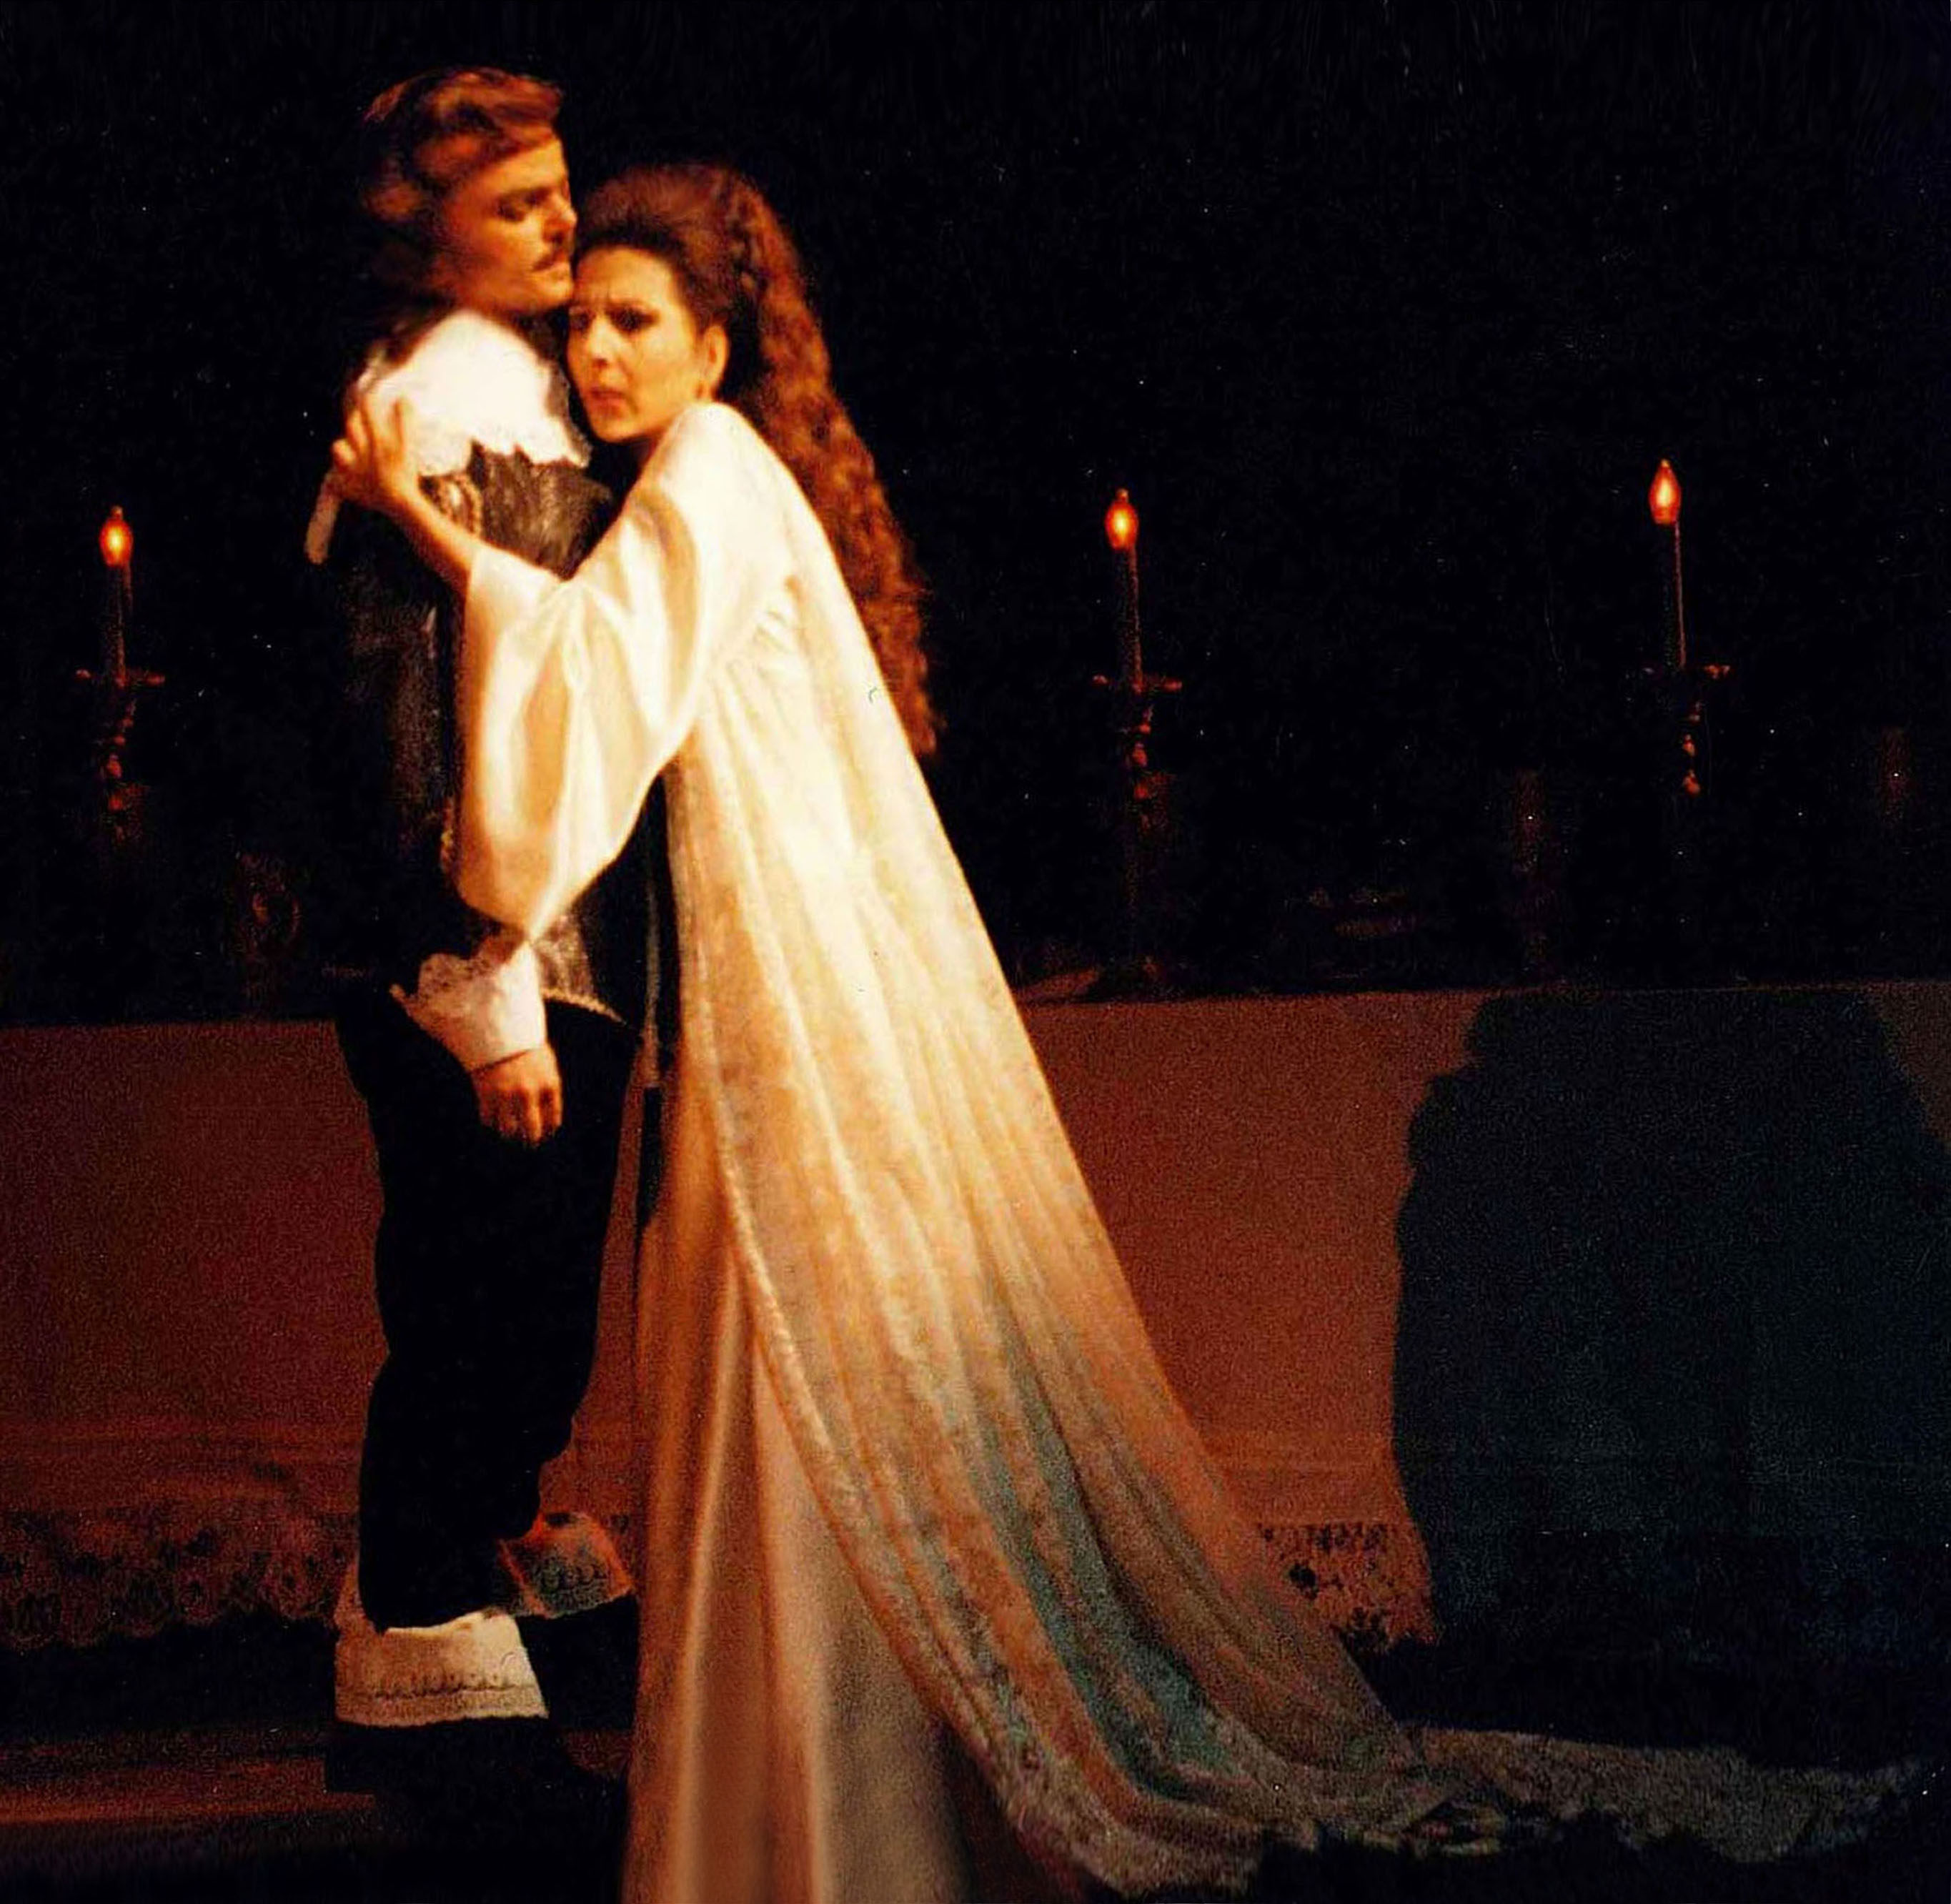 Lucia Aliberti with the baritone Roberto Frontali⚘Deutsche Oper Berlin⚘Berlin⚘Opera⚘"Lucia di Lammermoor"⚘On Stage⚘Photo taken from the TV News⚘TV Portrait⚘:http://www.luciaaliberti.it #luciaaliberti #robertofrontali #deutscheoperberlin #berlin #luciadilammermoor #opera #onstage #tvnews #tvportrait